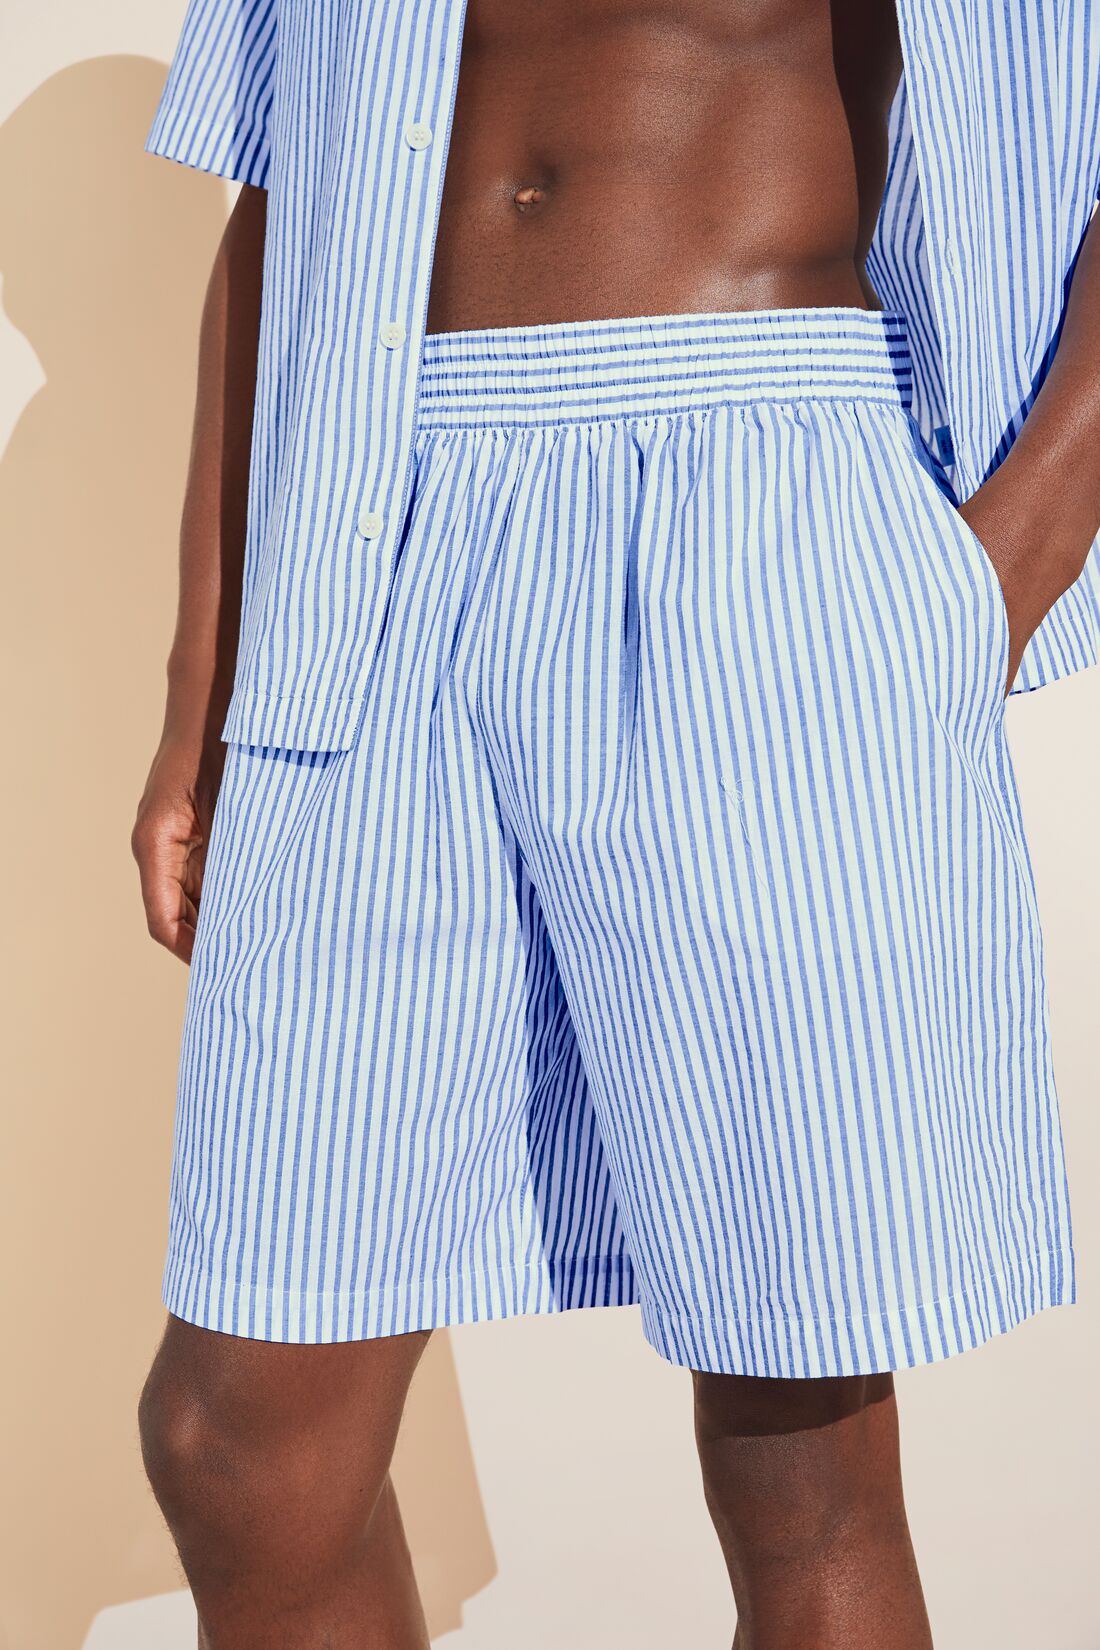 Men's Organic Sandwashed Cotton Short PJ Set - Nautico Stripe Azure